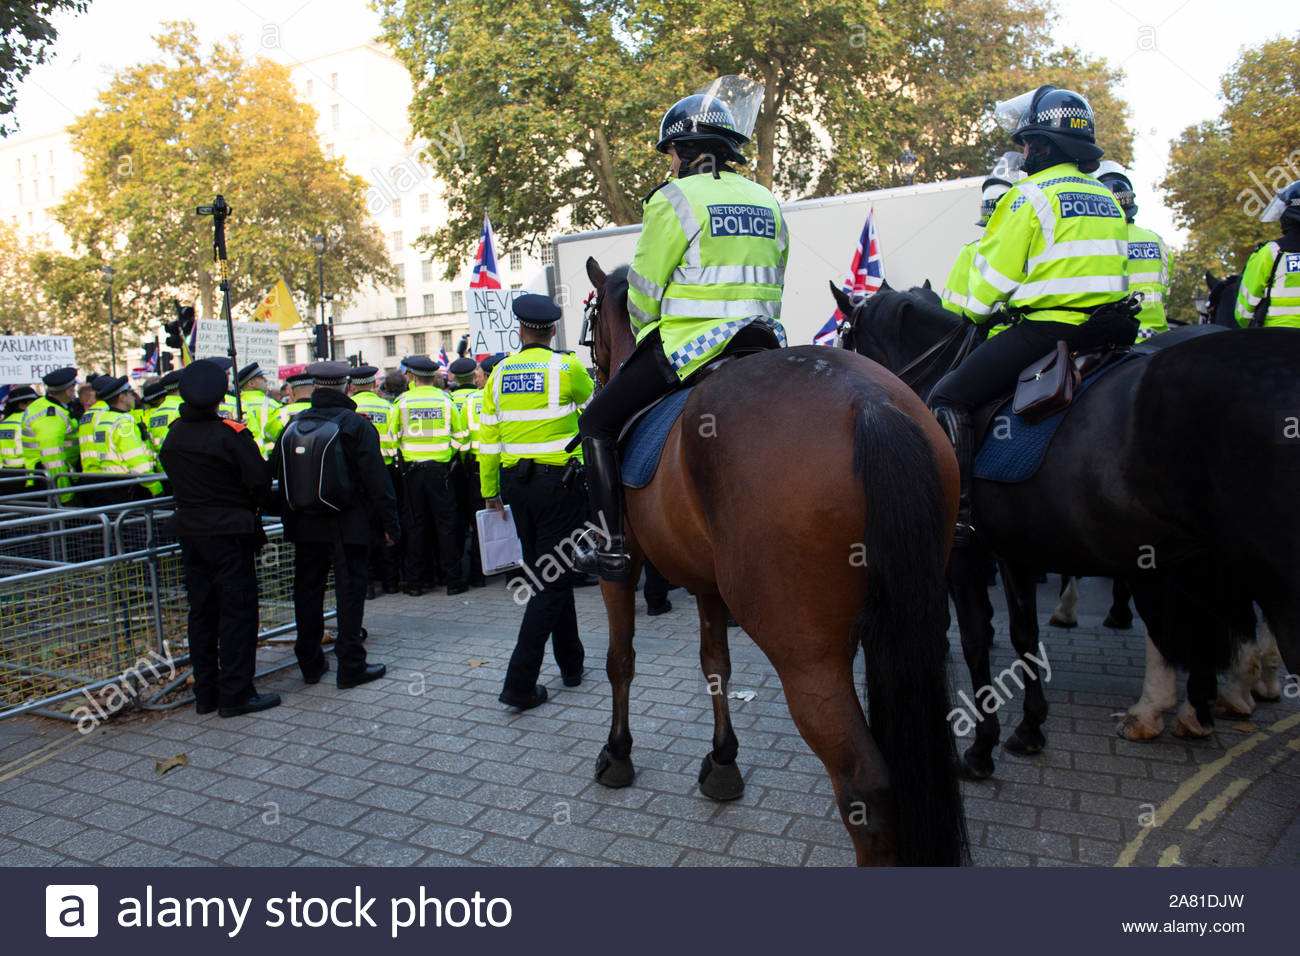 Un lasciare significa lasciare marzo ha avuto luogo a Westminster il 31 ottobre in segno di protesta per la mancata consegna di Brexit. Vi è stata una forte presenza della polizia alla protesta e gli arresti sono stati effettuati. Polizia montata erano anche a portata di mano per tenere la folla da Downing Street. Foto Stock